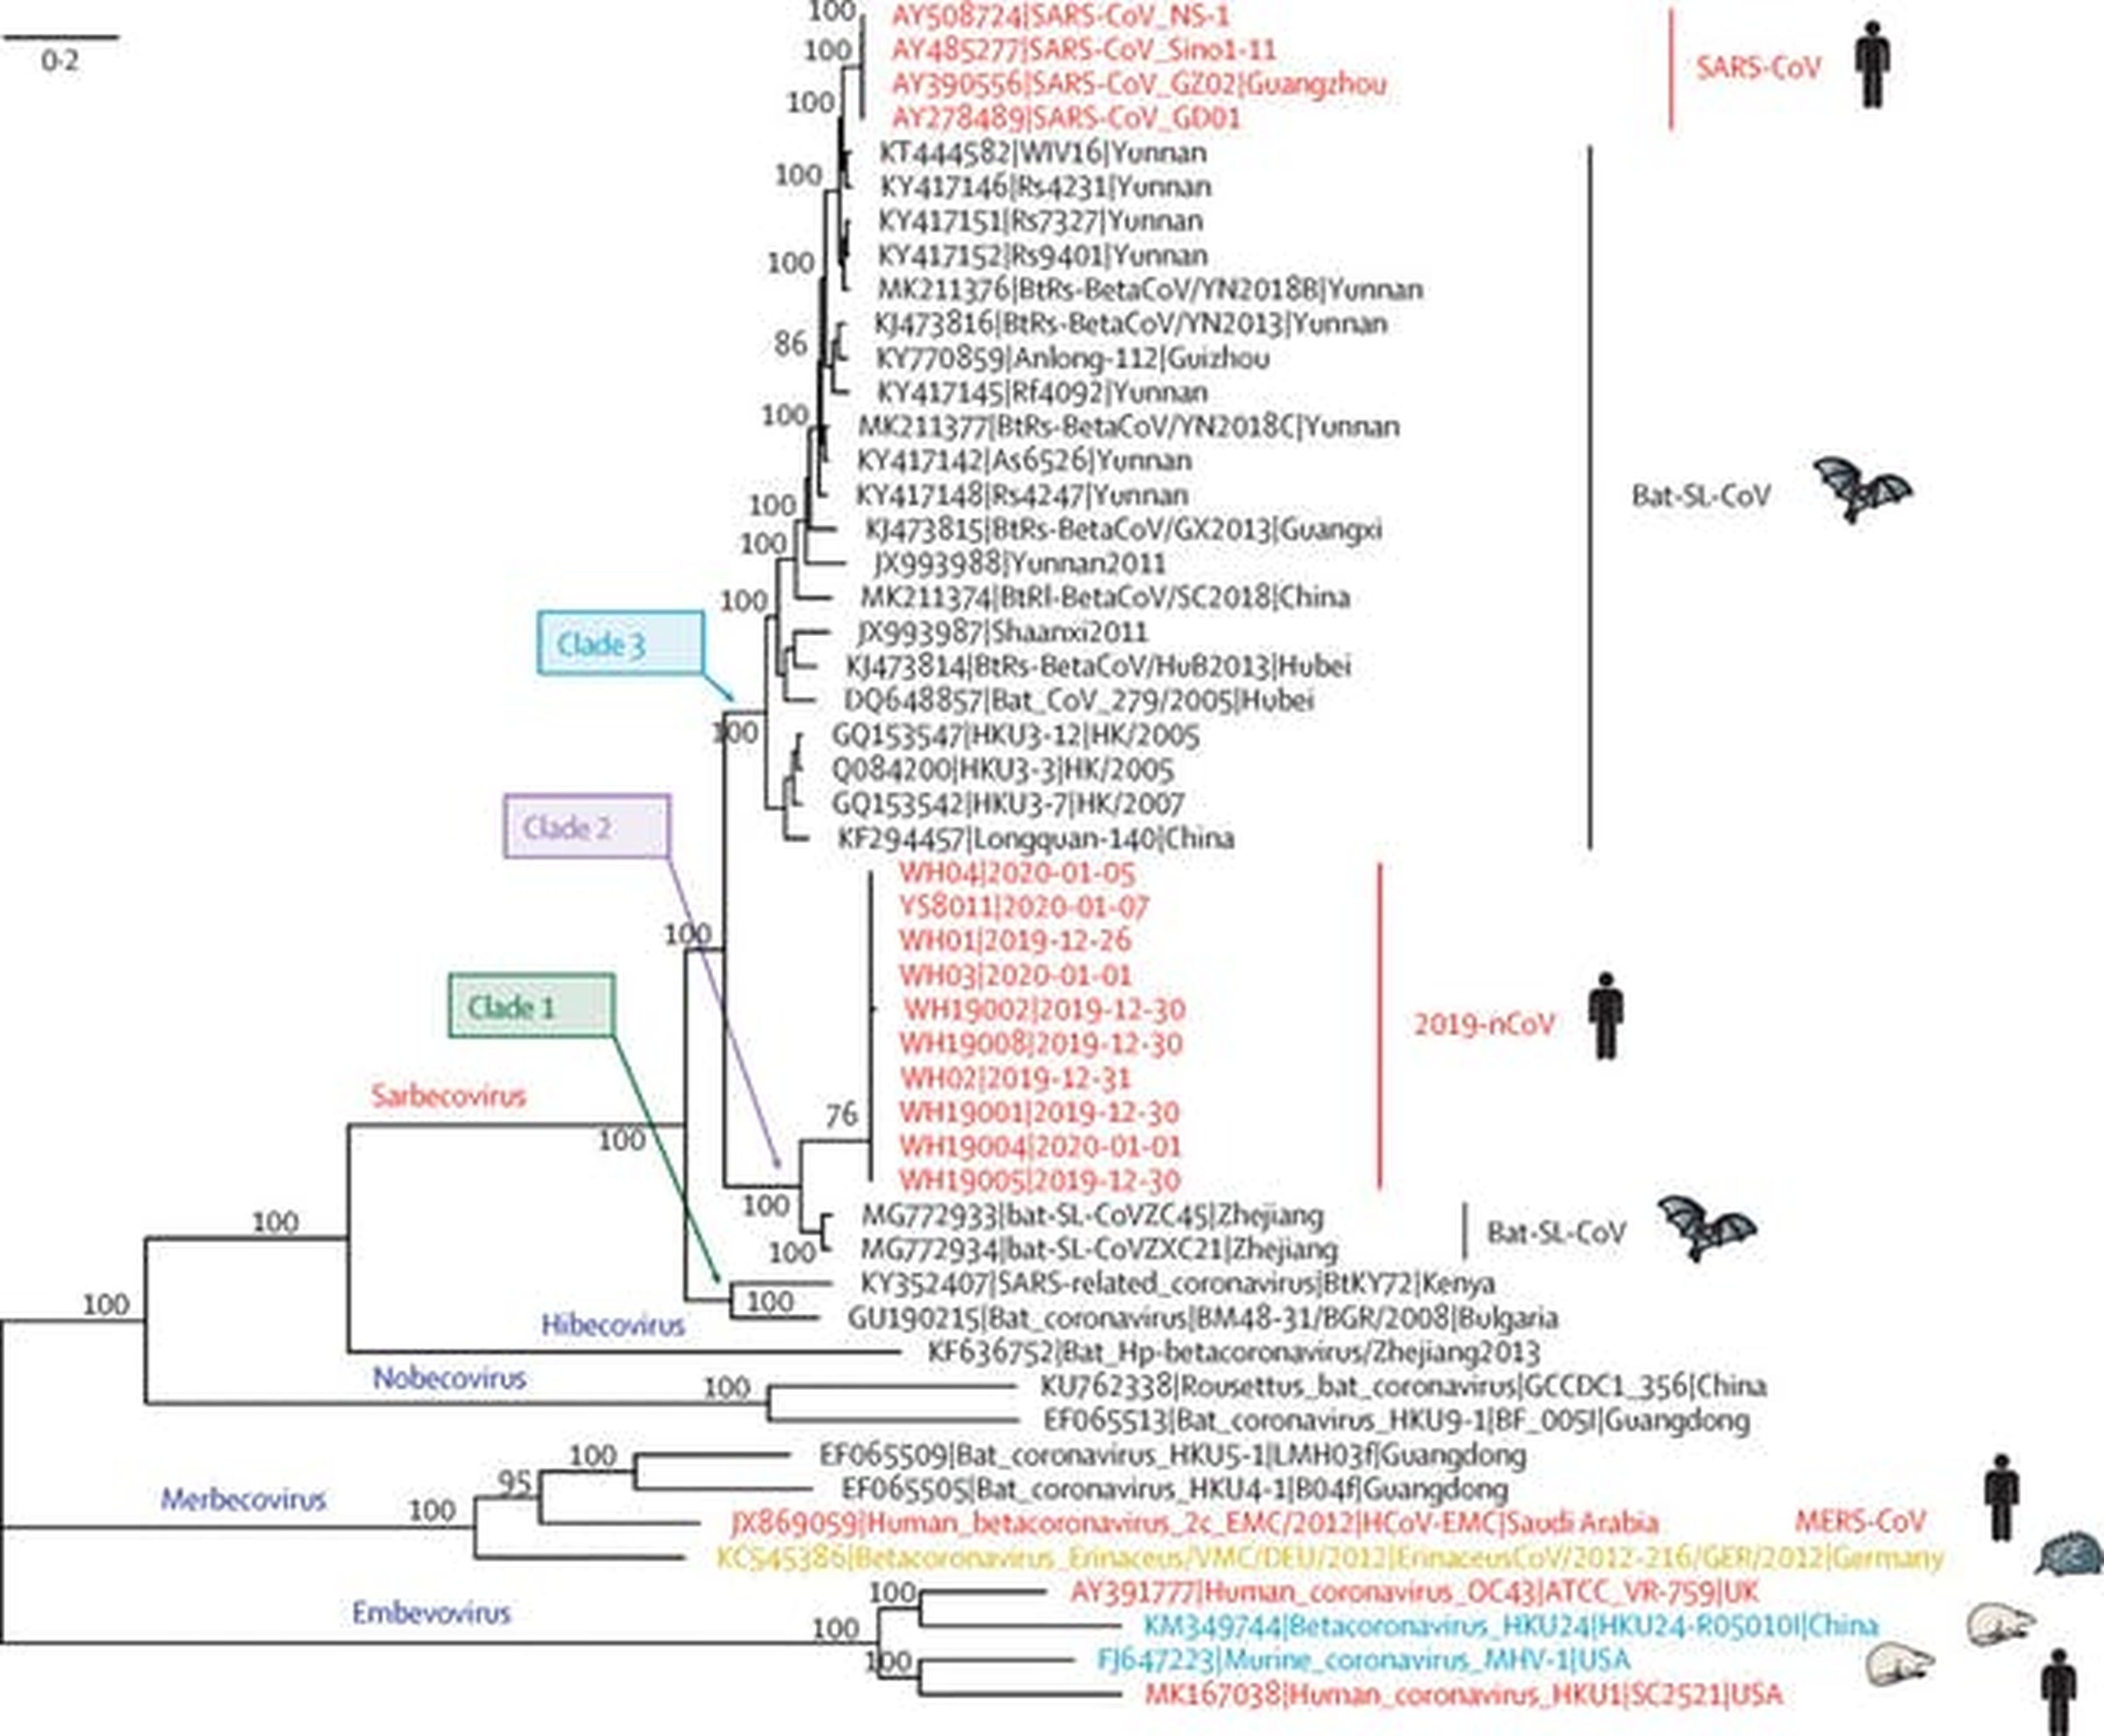 Análisis filogenético de los genomas completos de 2019-nCoV y de los virus representativos del Betacoronavirus.